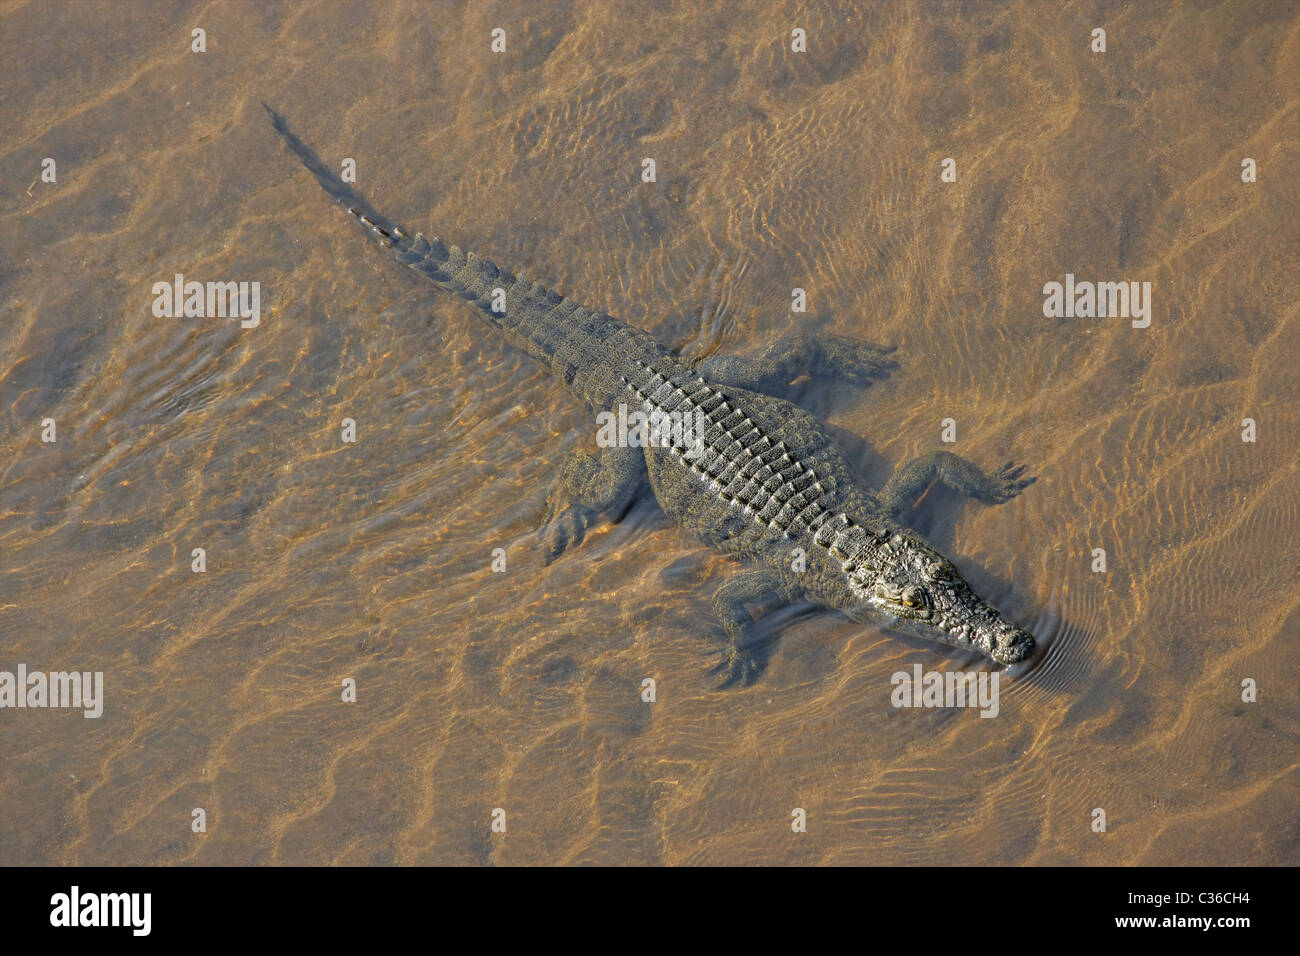 Coccodrillo del Nilo (Crocodylus niloticus) immerso in acqua fluente, Sud Africa Foto Stock